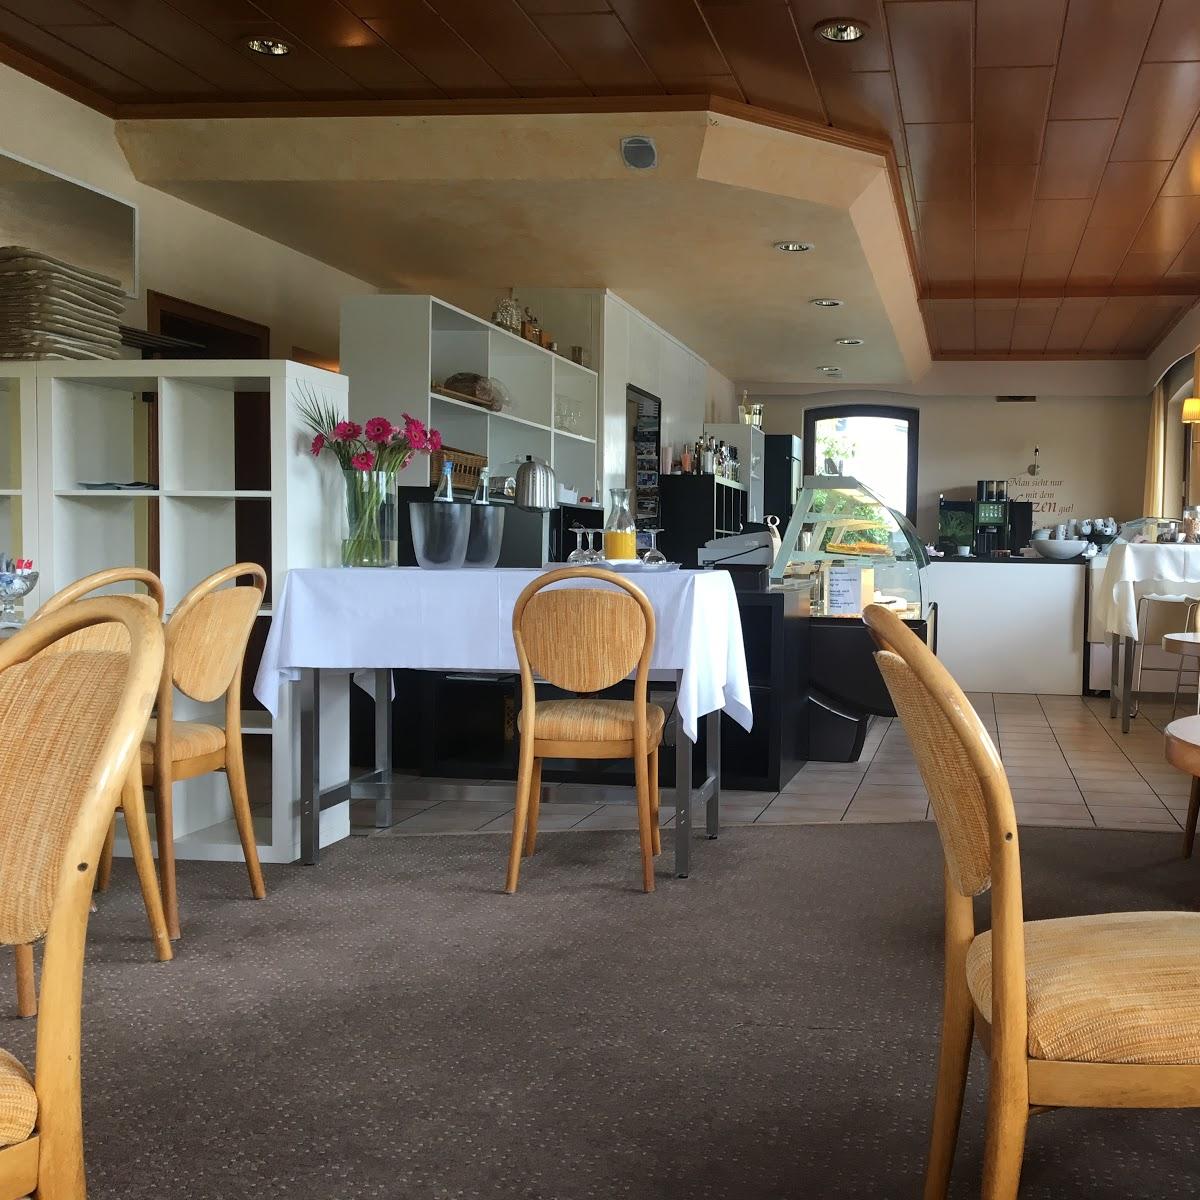 Restaurant "Ufercafé zum Nationalpark Eifel" in Simmerath